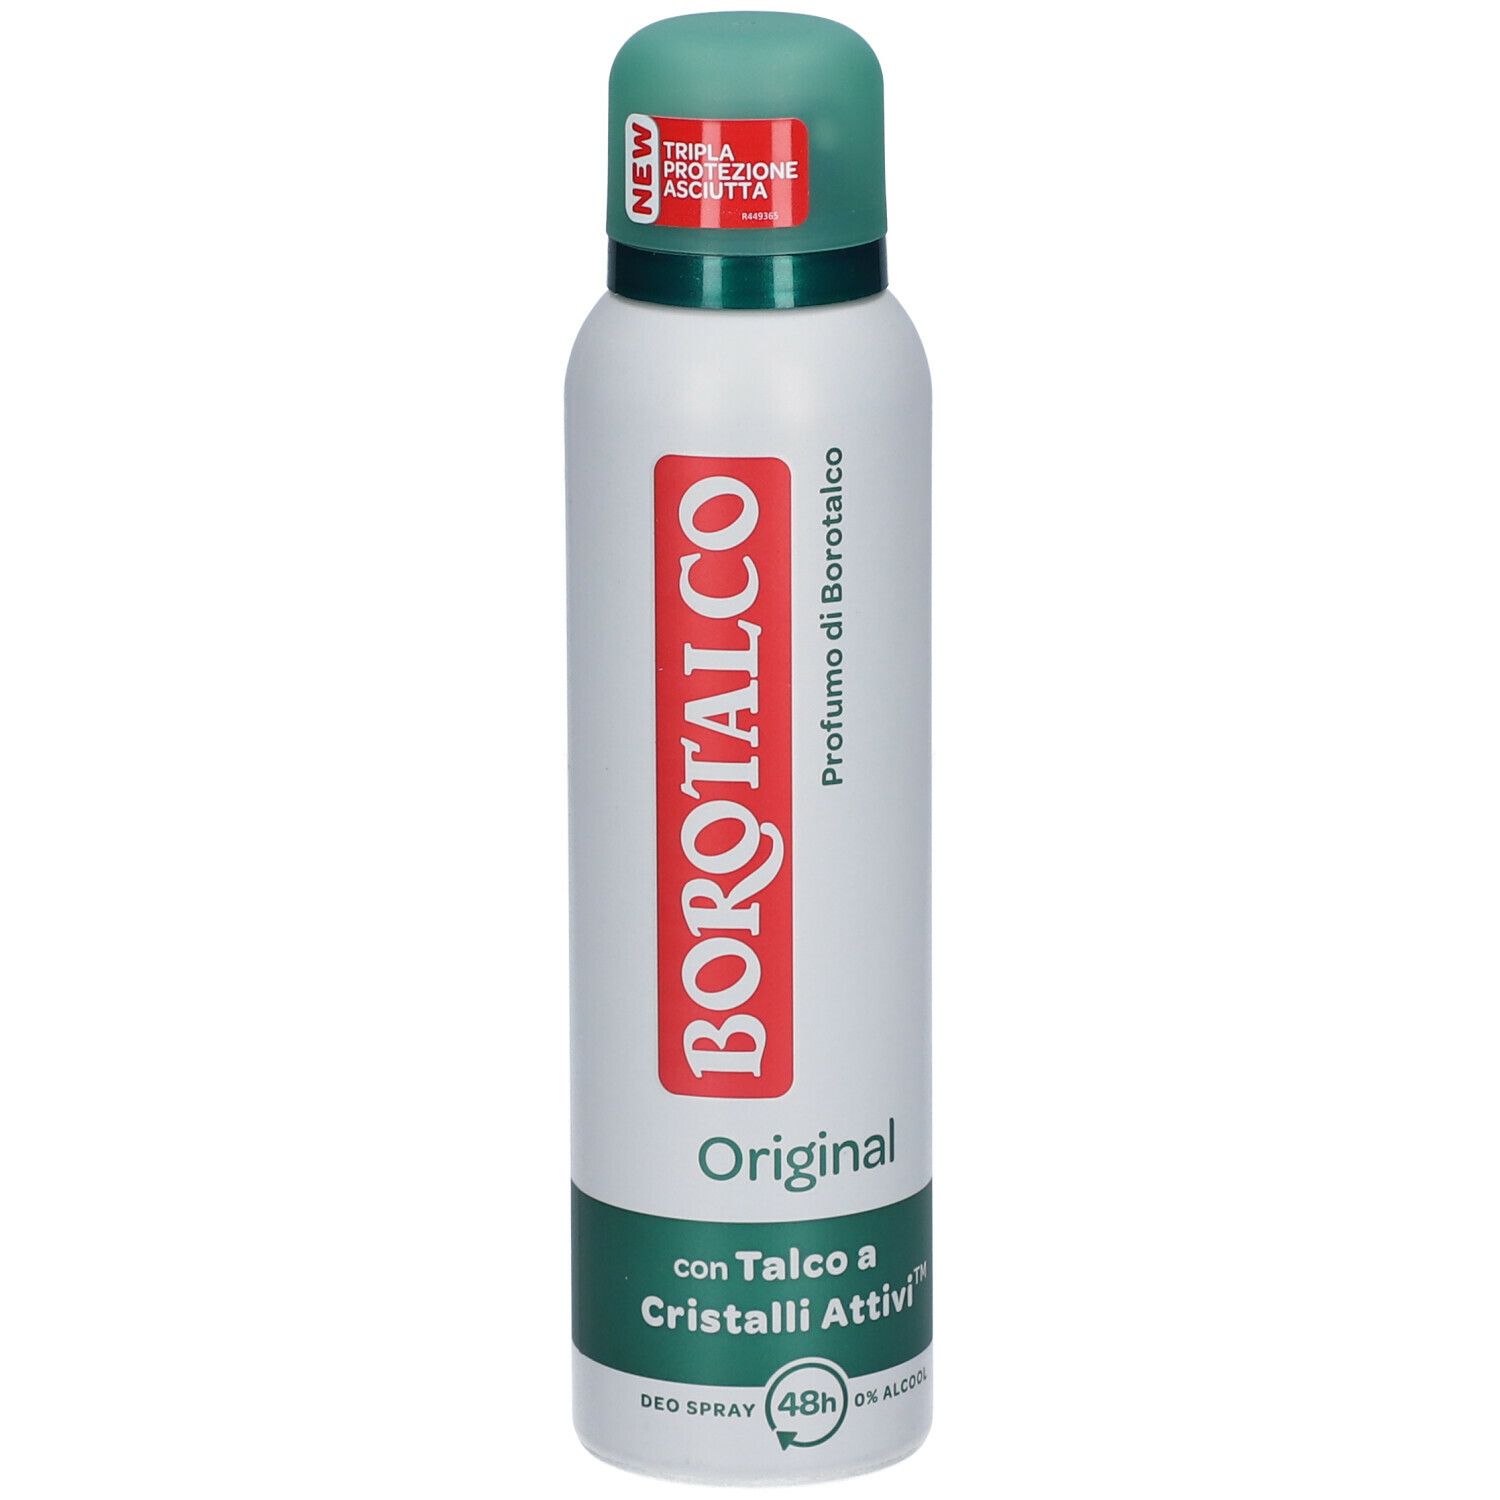 BOROTALCO Original Deodorante Spray